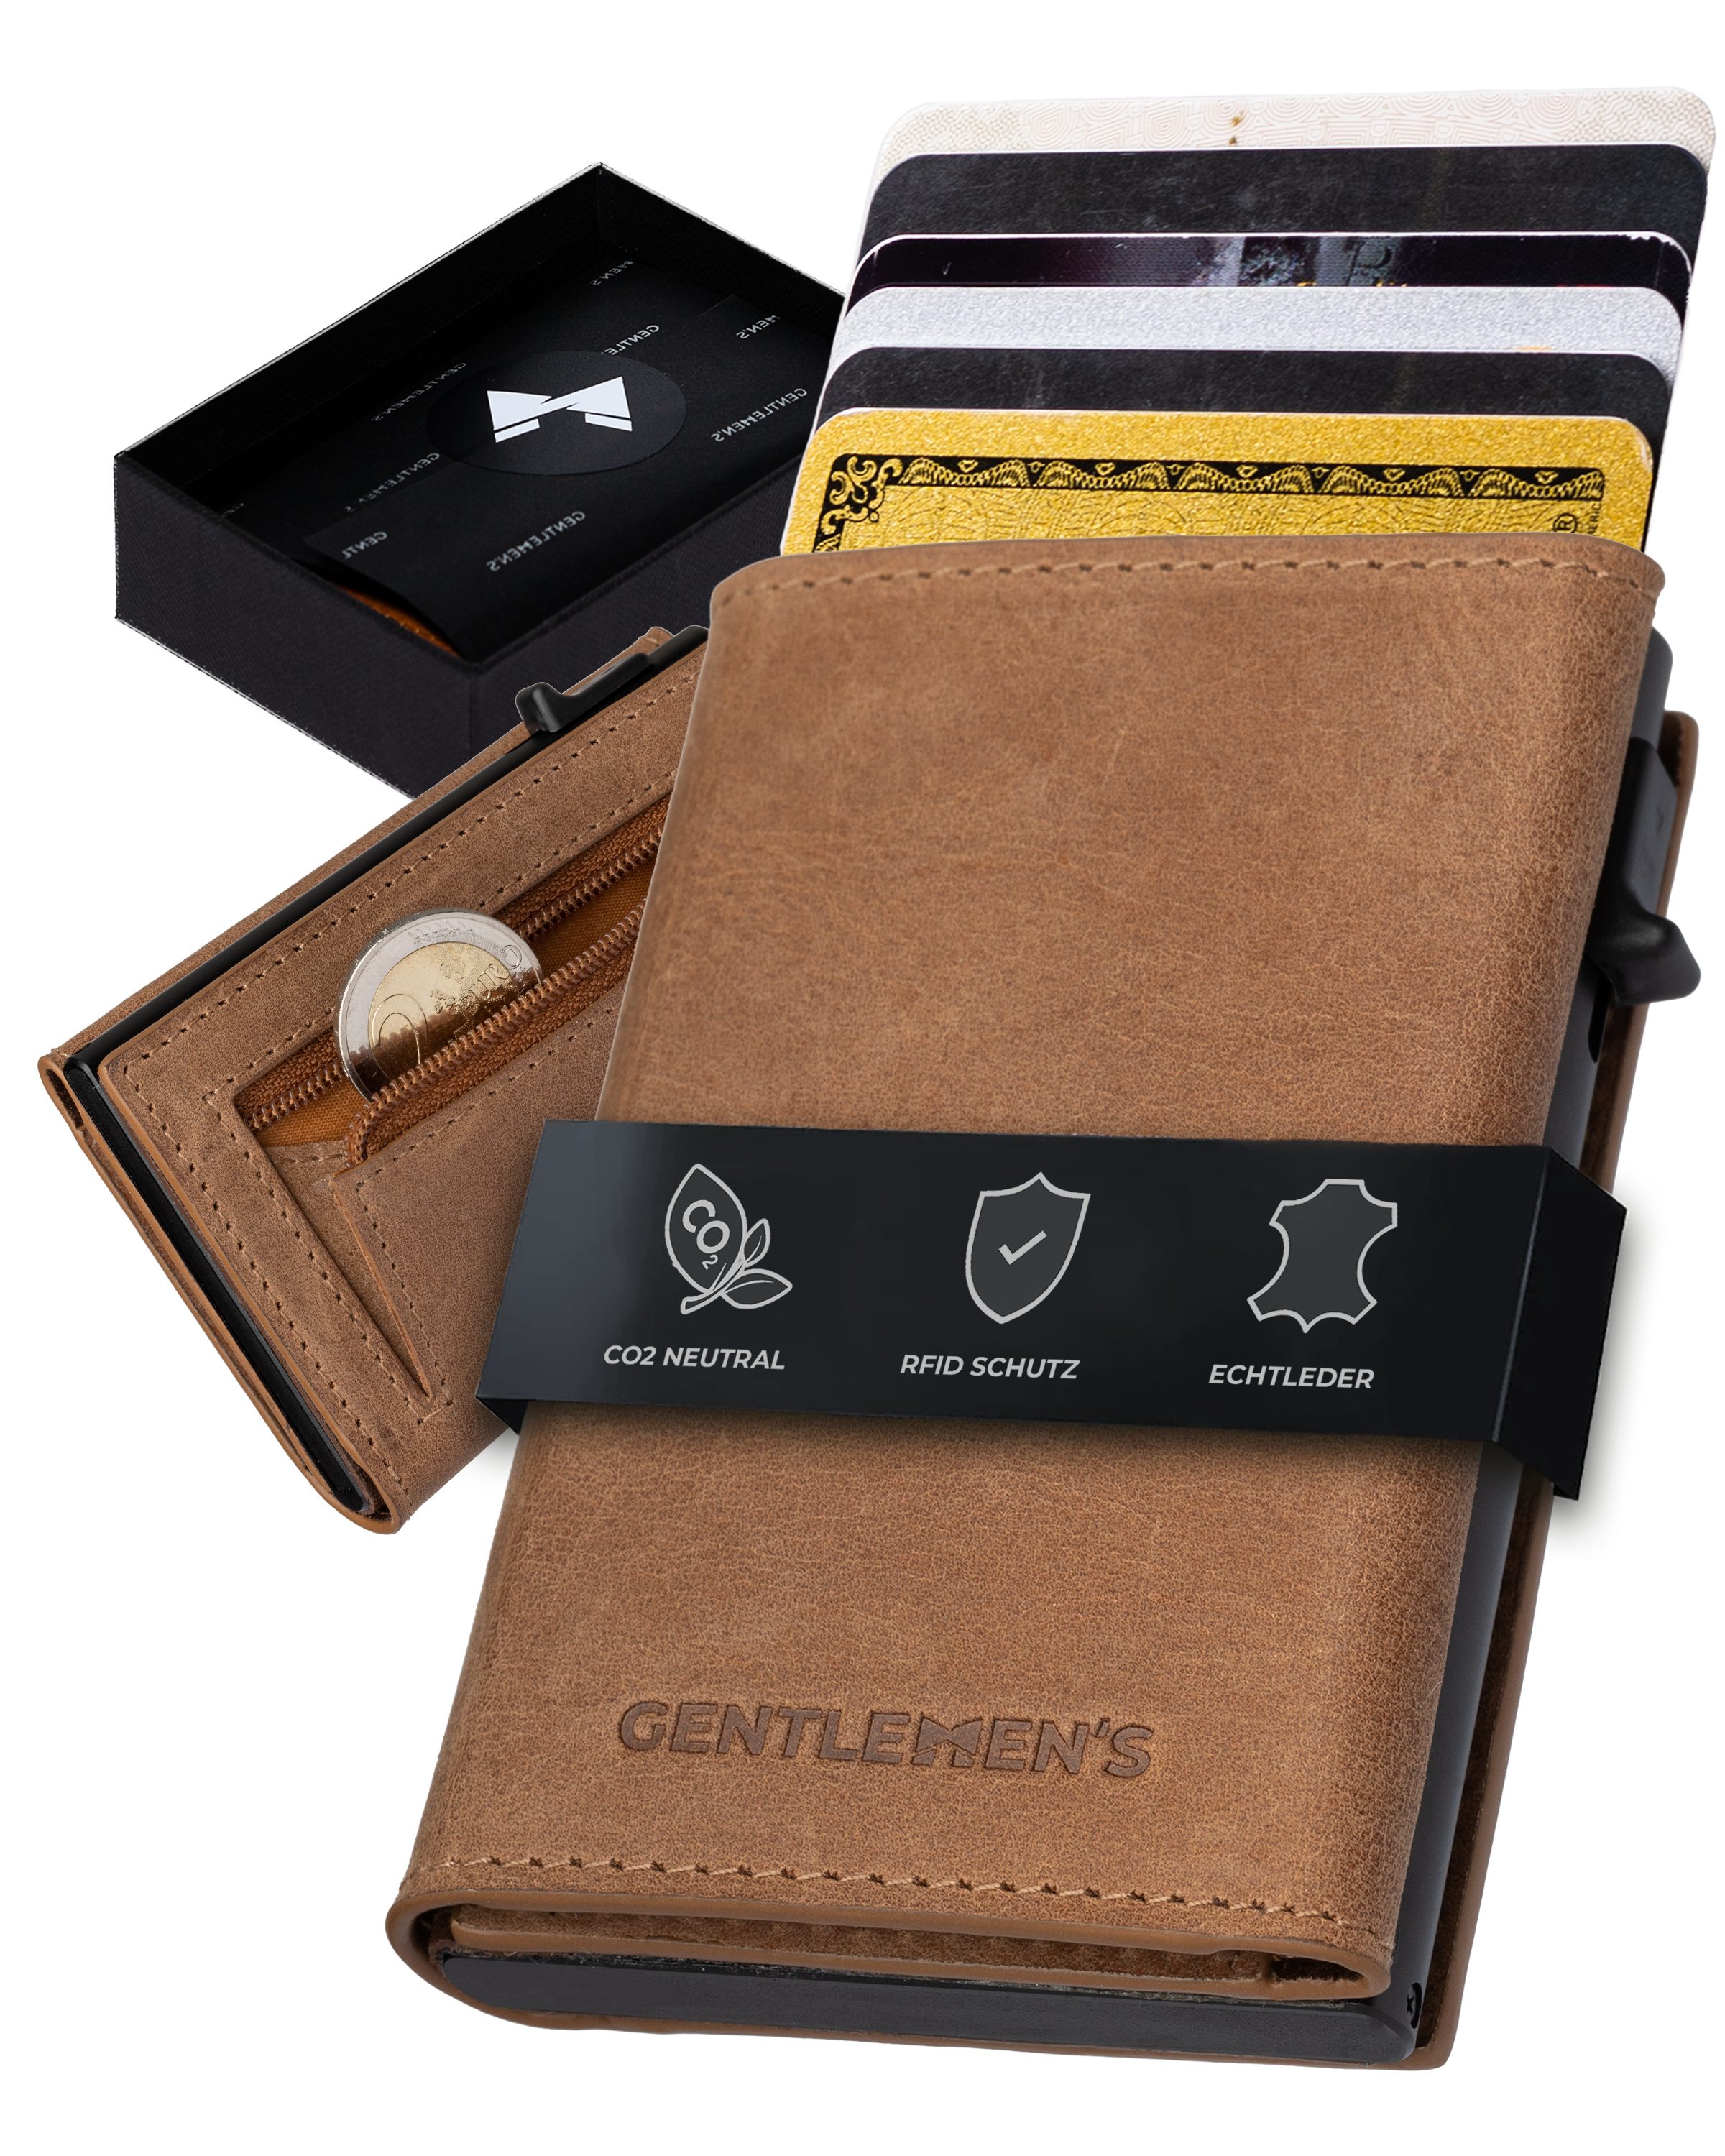 Geldbeutel & - Gentlemen's Geldbörse Kreditkartenetui mit RFID-Schutz Kleiner Smart Wallet, Herren - Herren Portemonnaie mit Scheinfach Cardholder Münzfach Cognac für